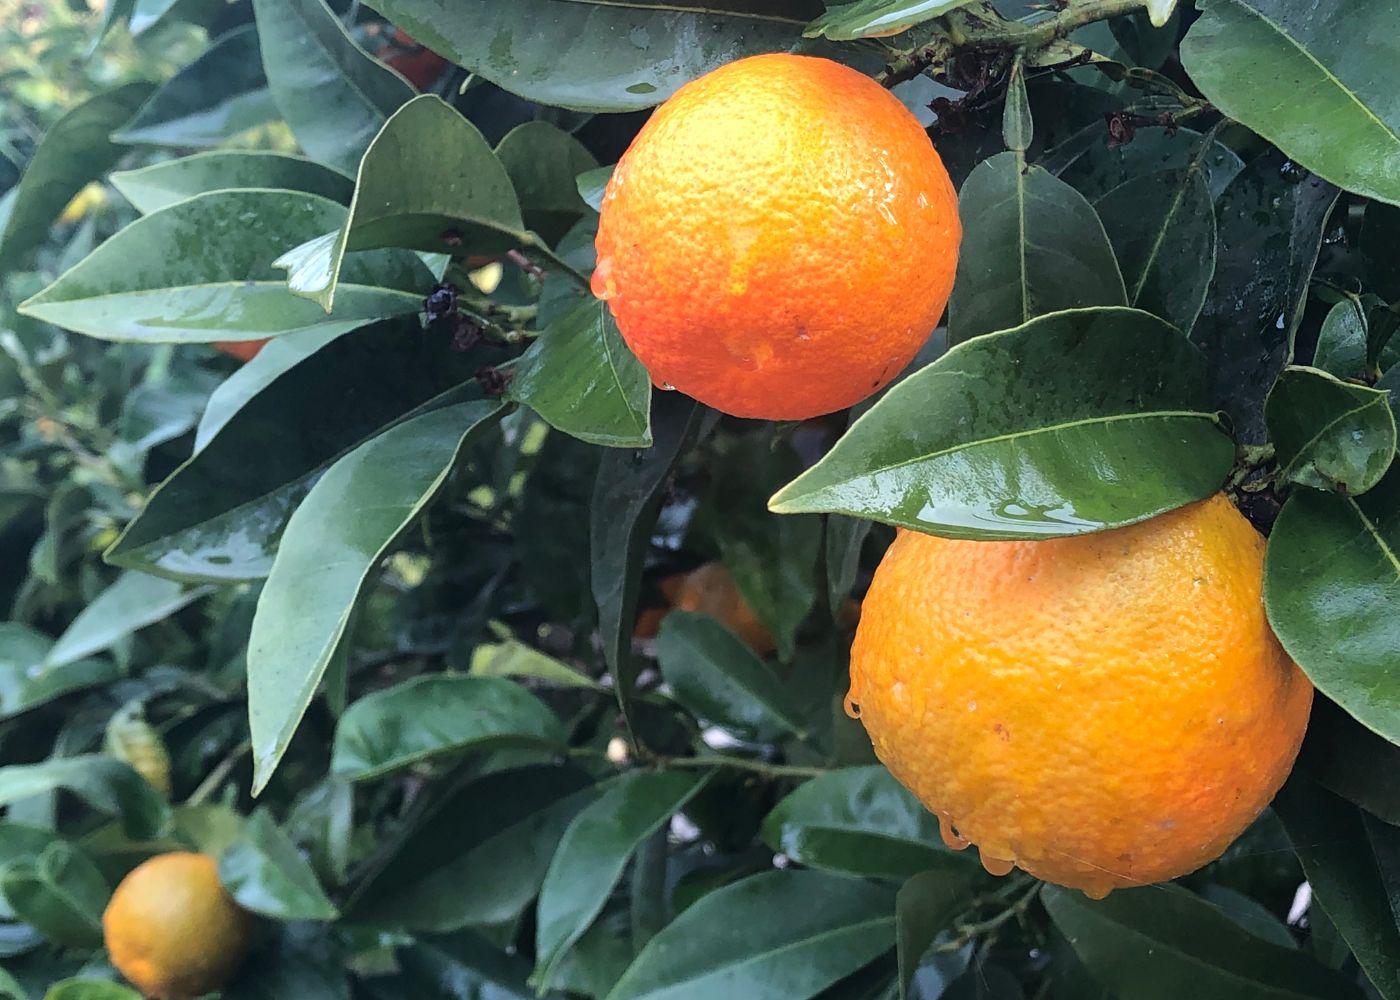 Pruning citrus after harvest